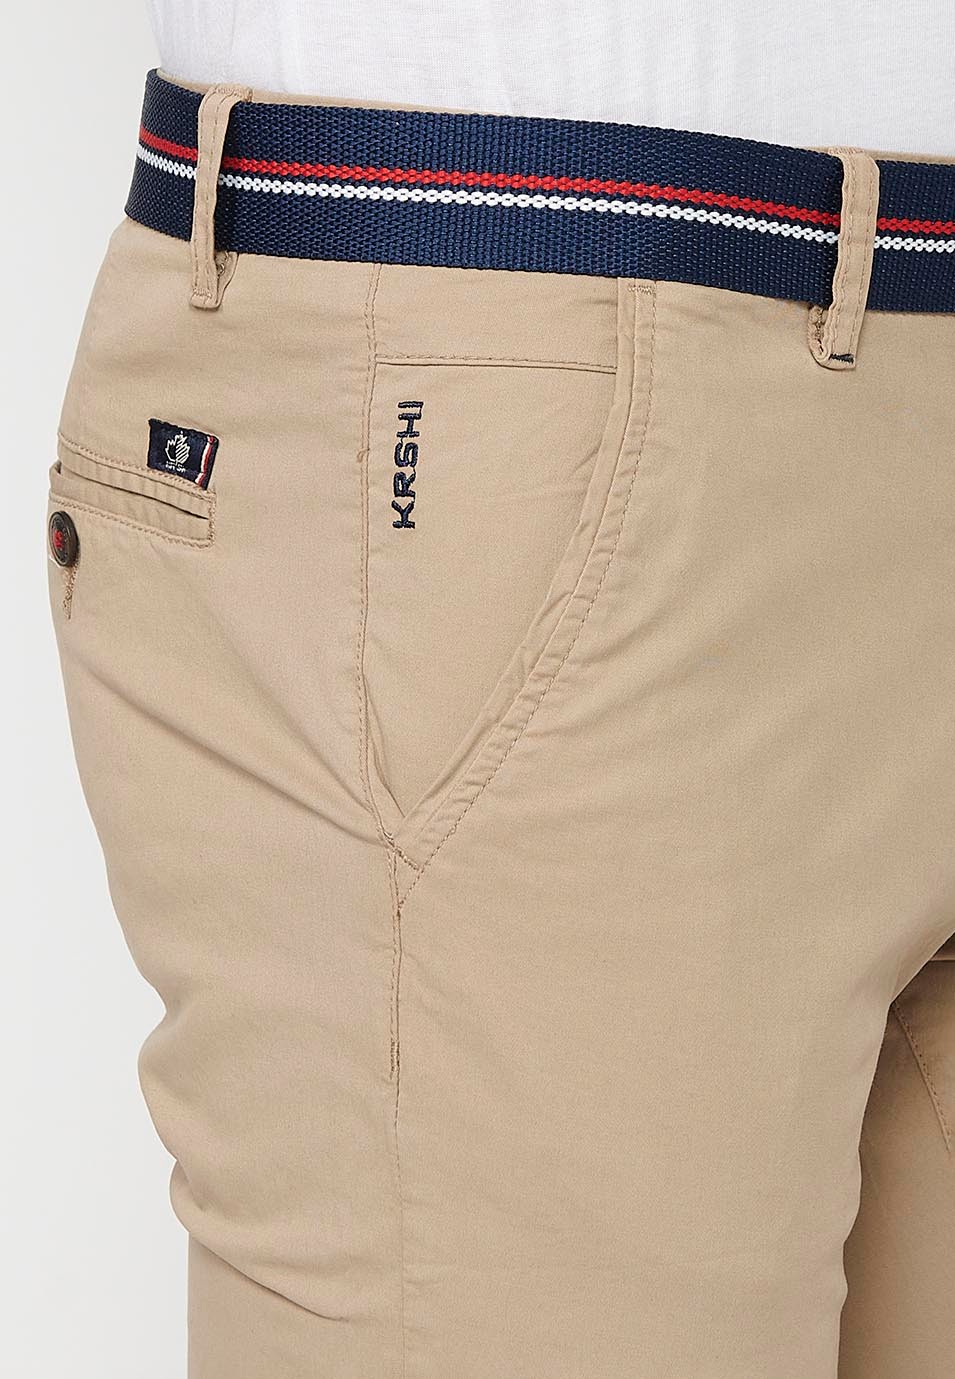 Pantalons curts acabats en volta amb Tancament davanter amb cremallera i botó i cinturó de Color Beige per a Home 8